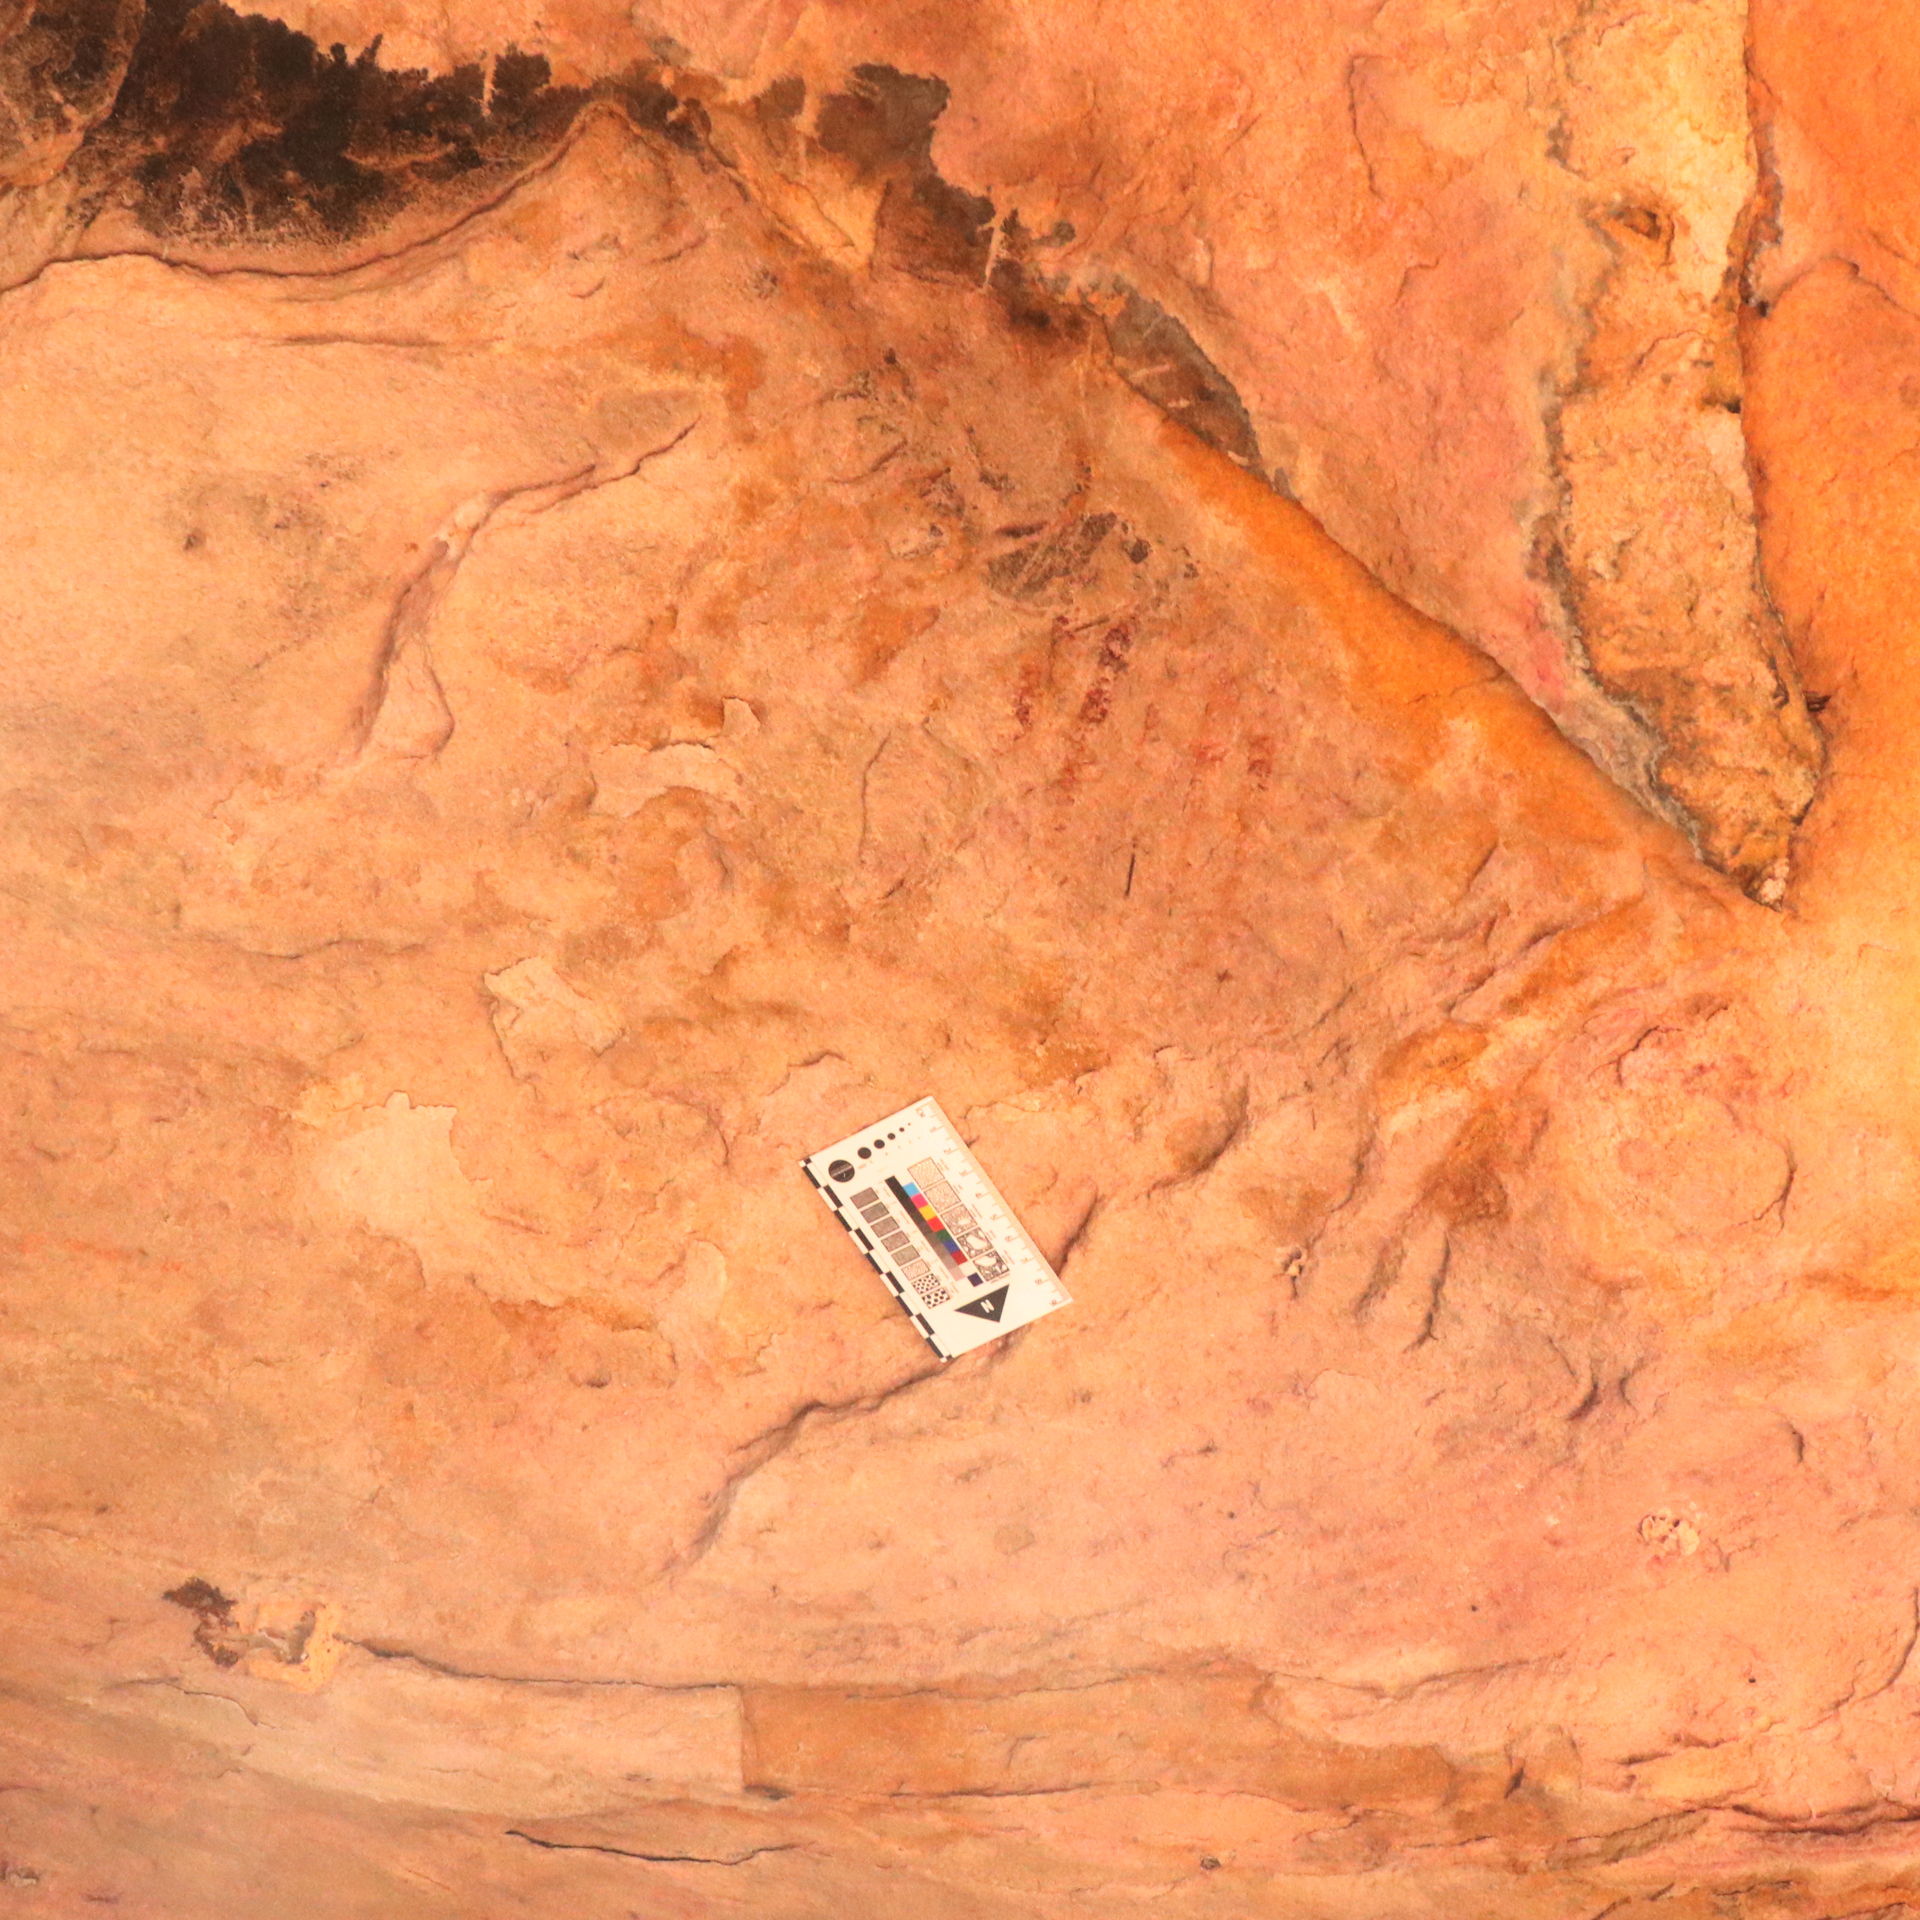 สำรวจแหล่งภาพเขียนสีถ้ำสบไถ ๒ ในเขตอุทยานแห่งชาติน้ำพอง จังหวัดขอนแก่น